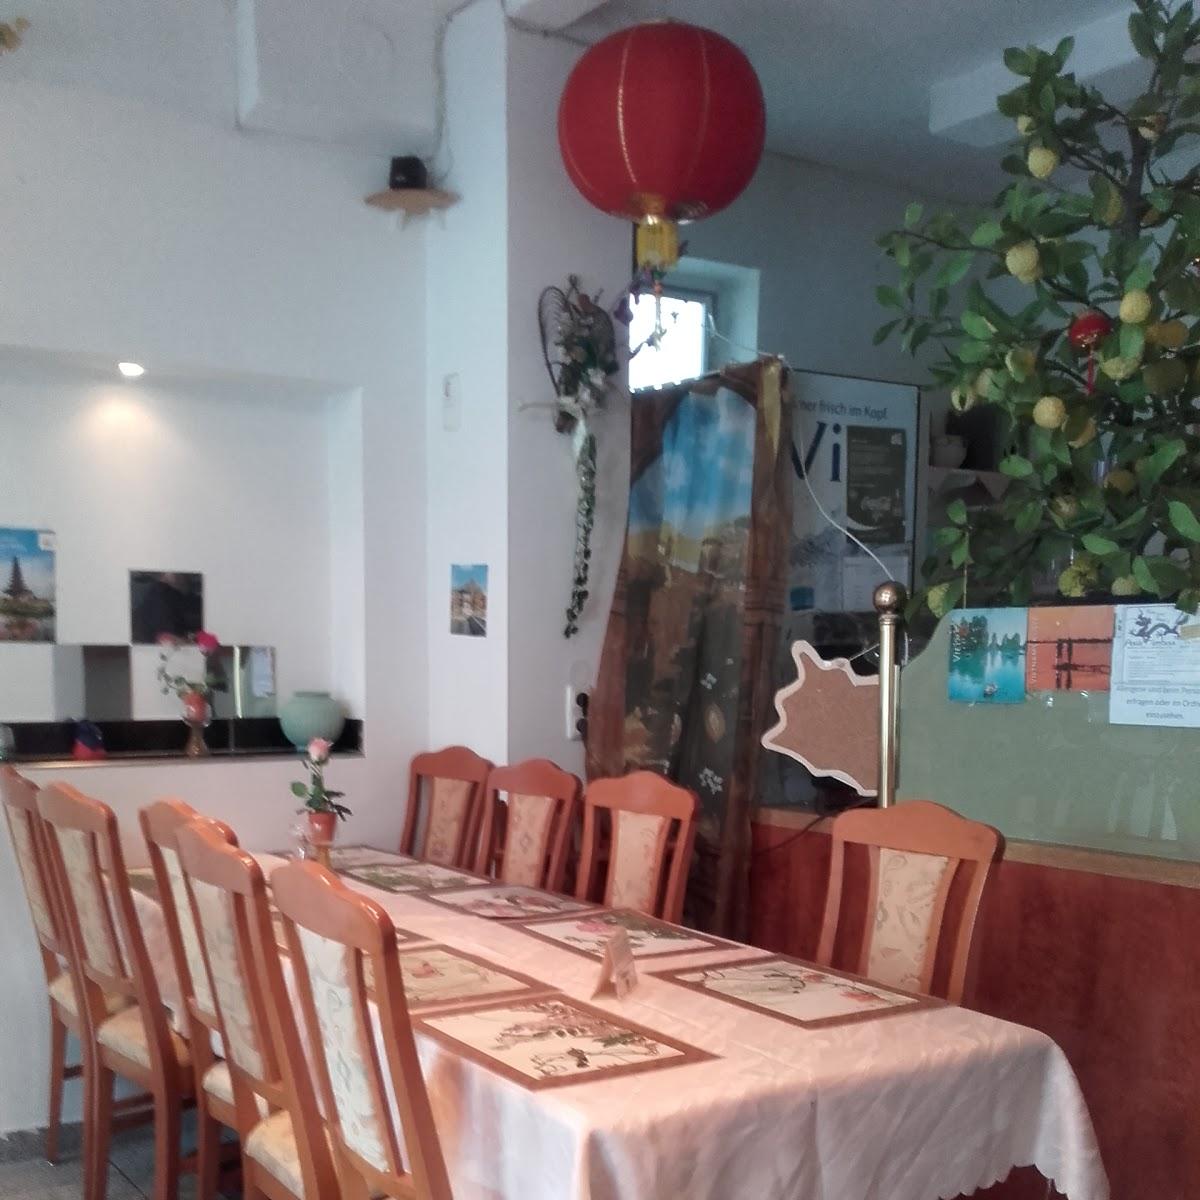 Restaurant "Kim und Tuan